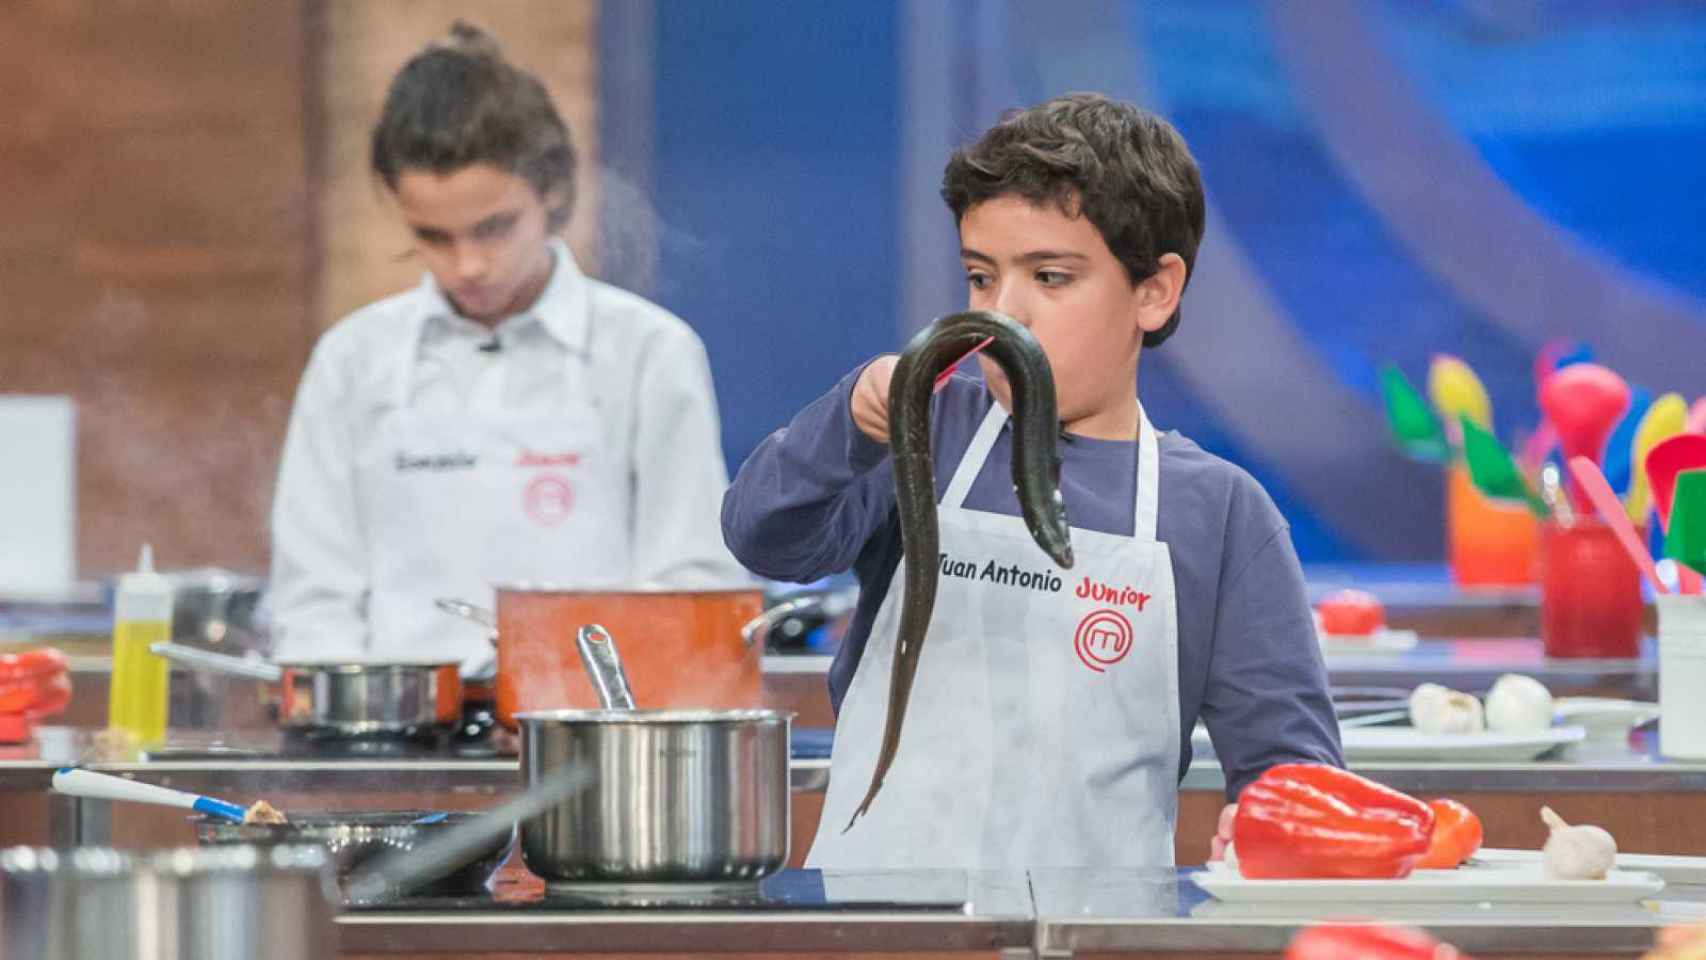 Juan Antonio durante su cocinado de la anguila en 'MasterChef Junior'